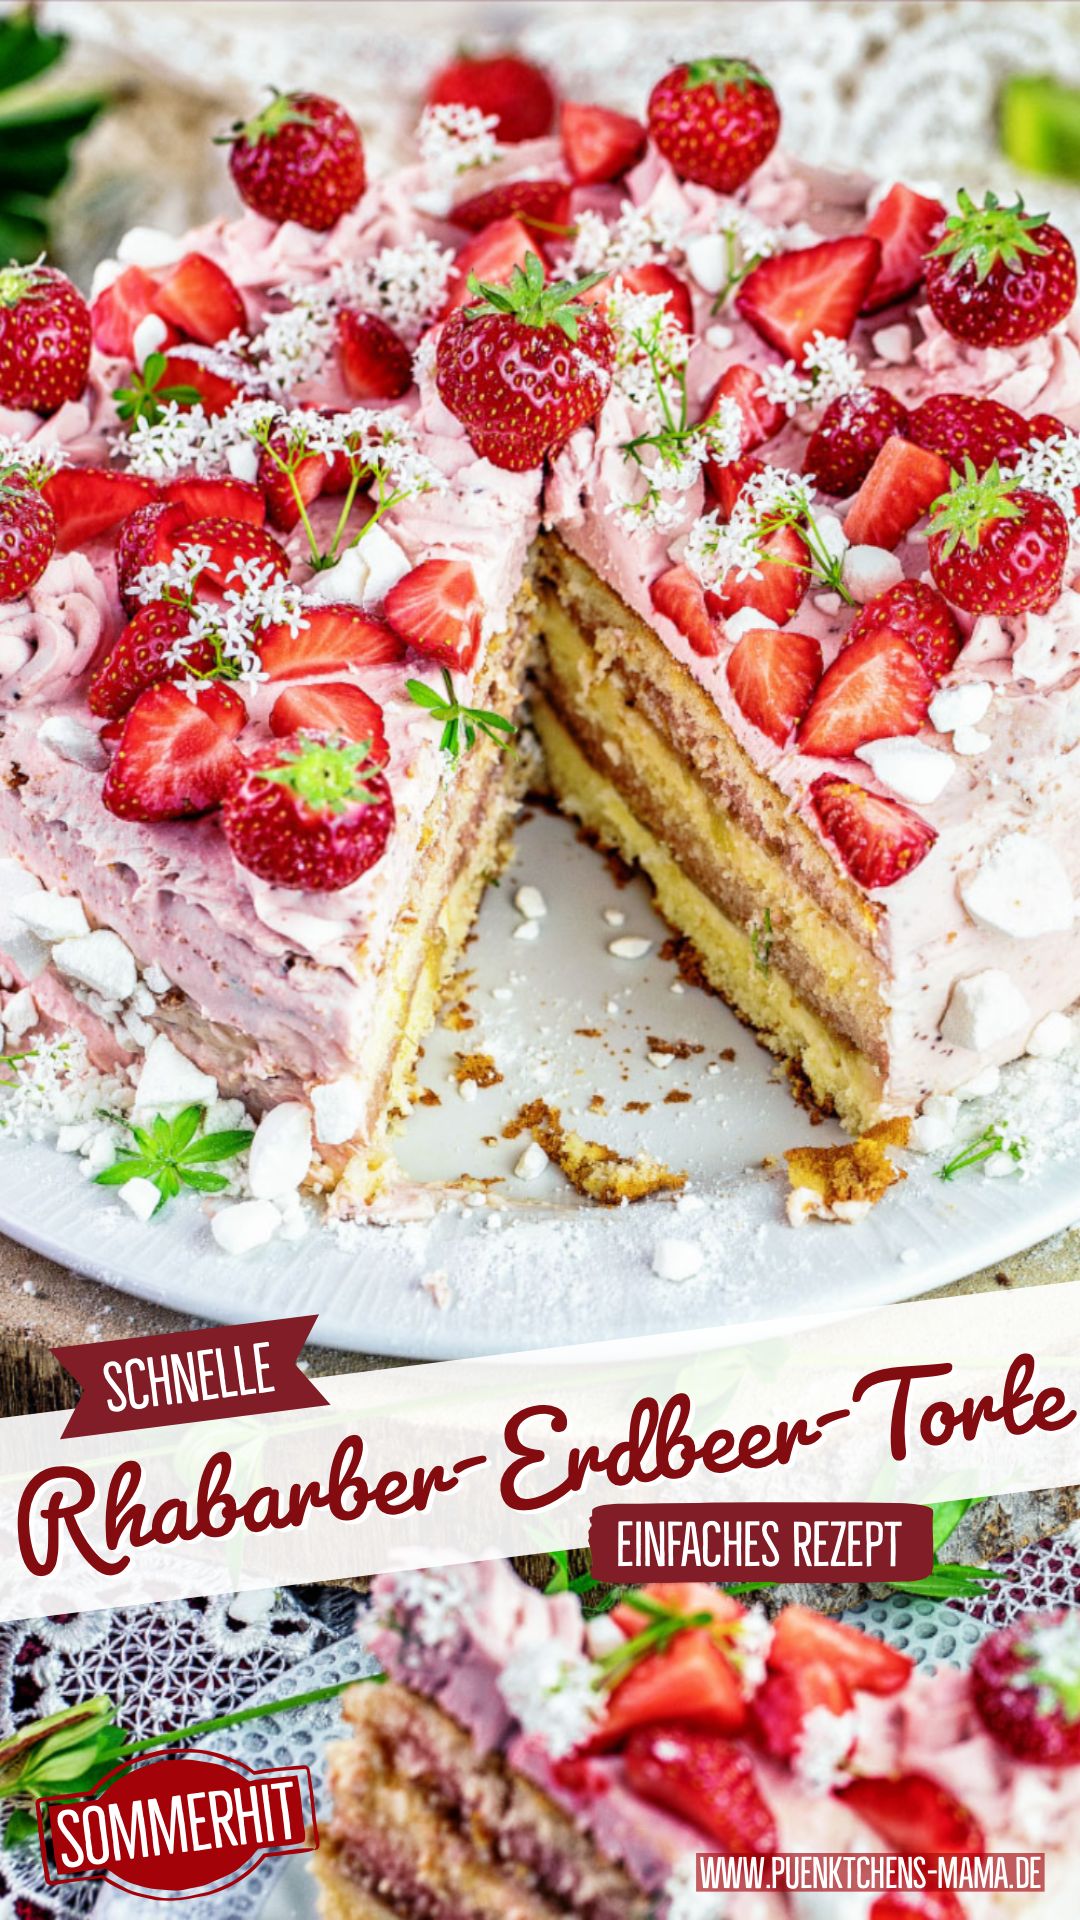 Rharbarber-Erdbeer-Pudding-Torte- einfaches Rezept mit fertigen Böden